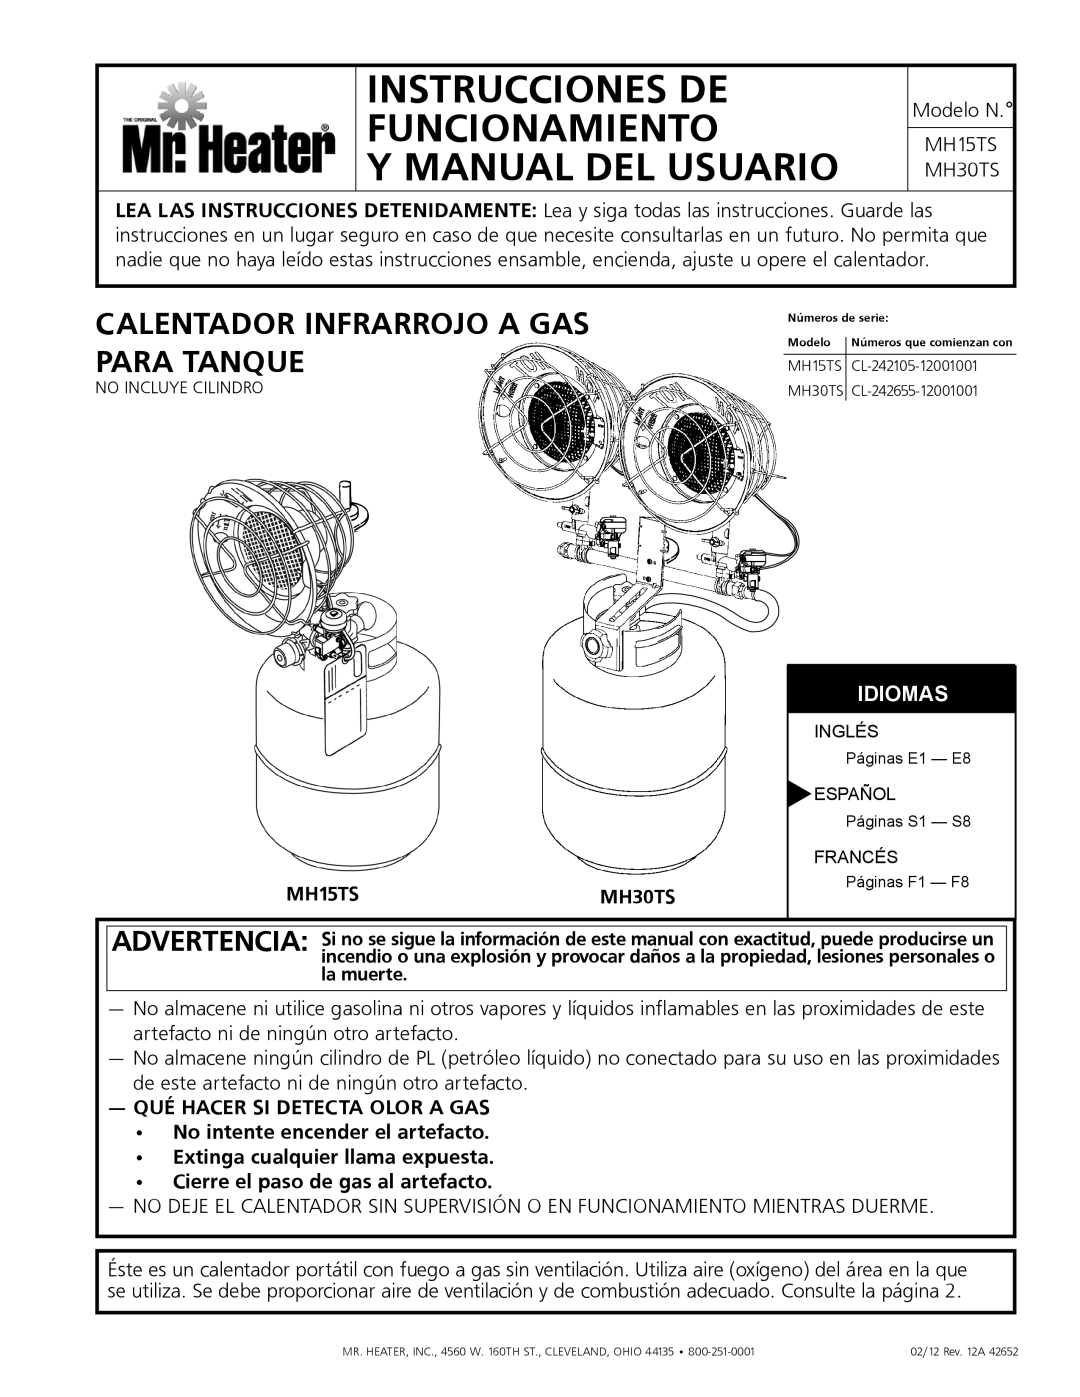 Mr. Heater MH15tS Instrucciones de funcionamiento, y manual del usuario, Calentador infrarrojo a gas, para tanque, Idiomas 